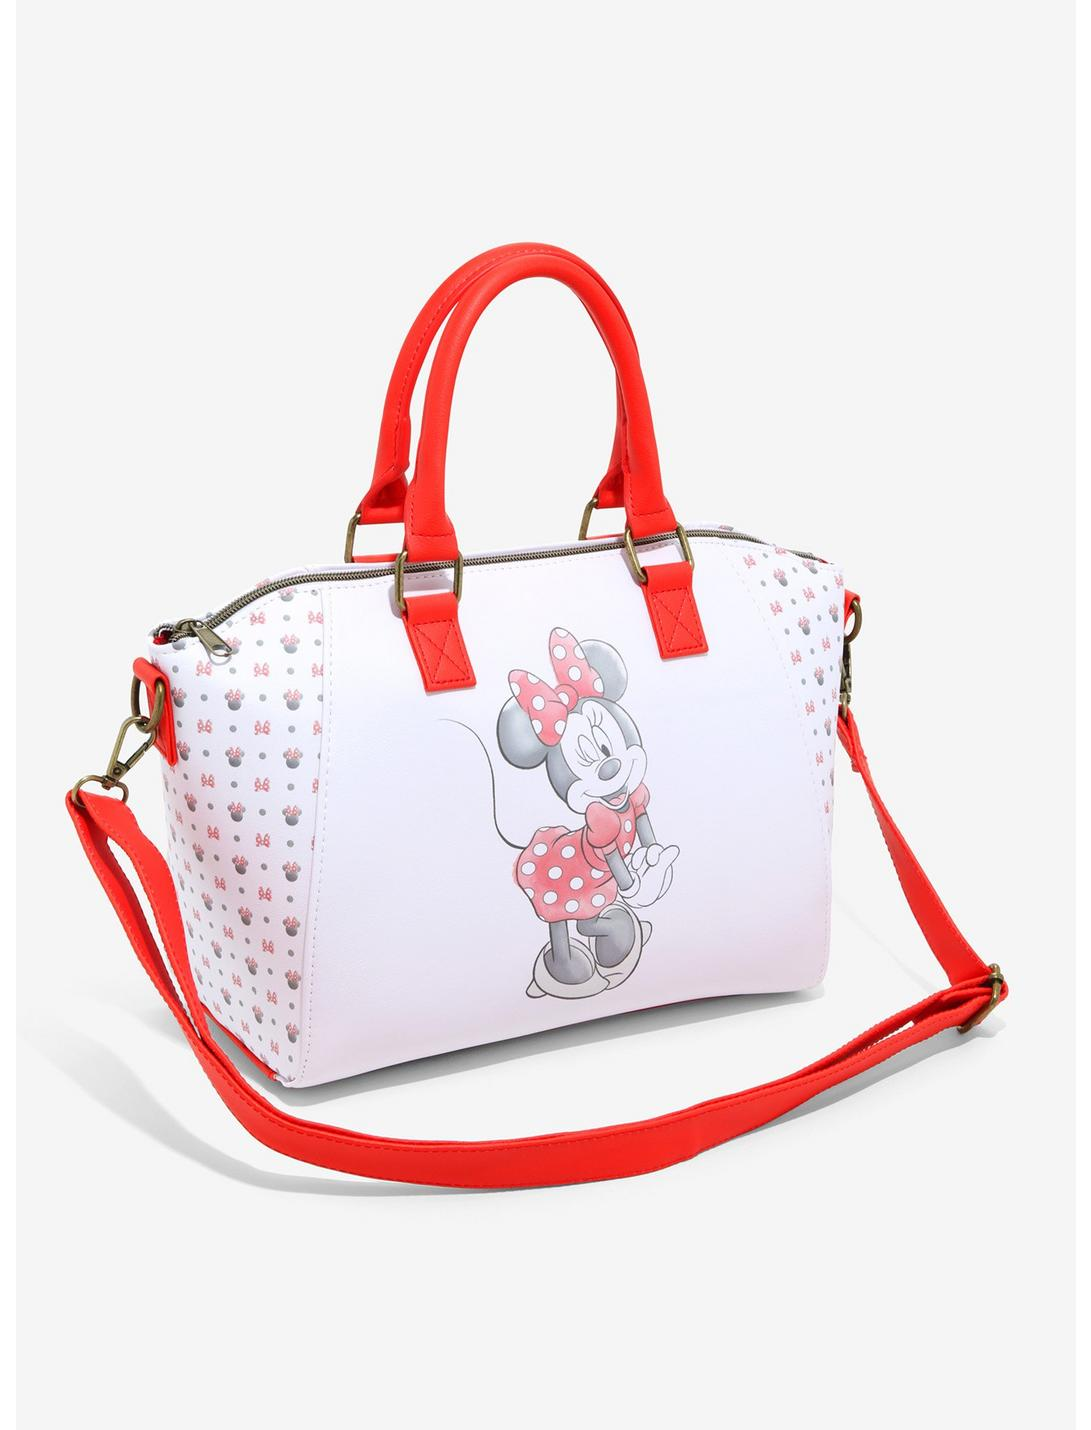 Bolsa Minnie Mouse Clasica